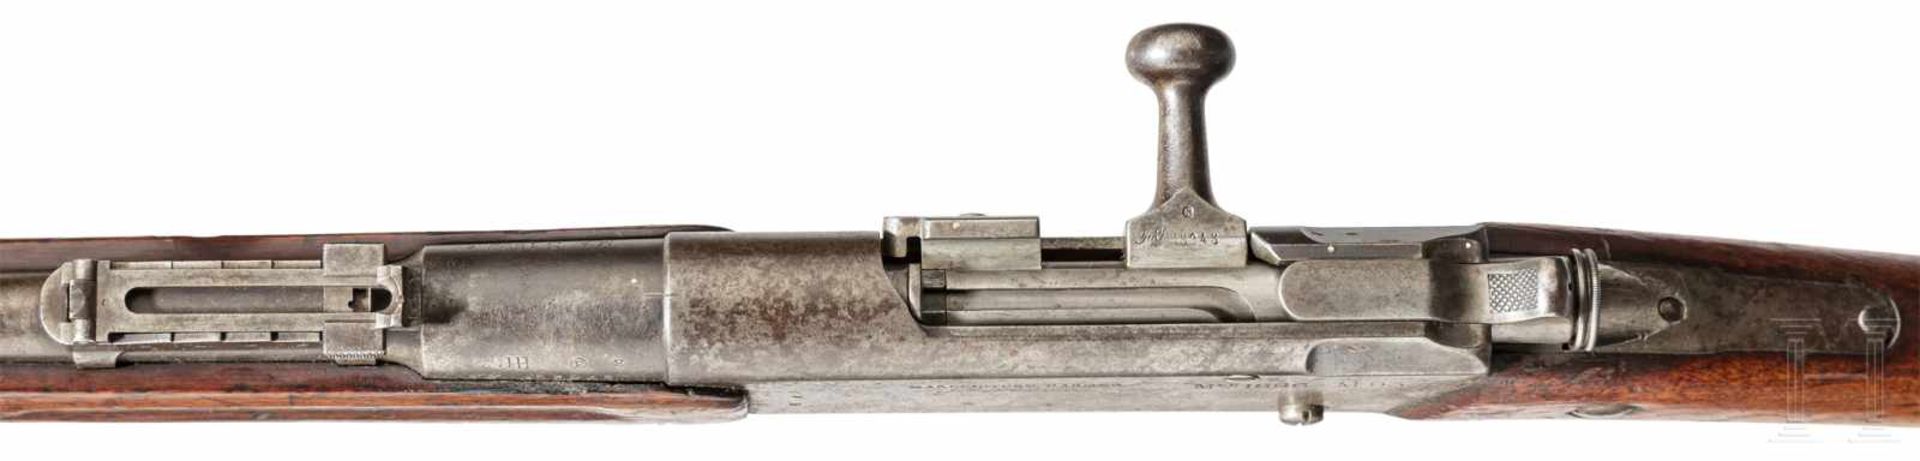 Fusil Lebel M 1886 - M 93 - Bild 3 aus 3